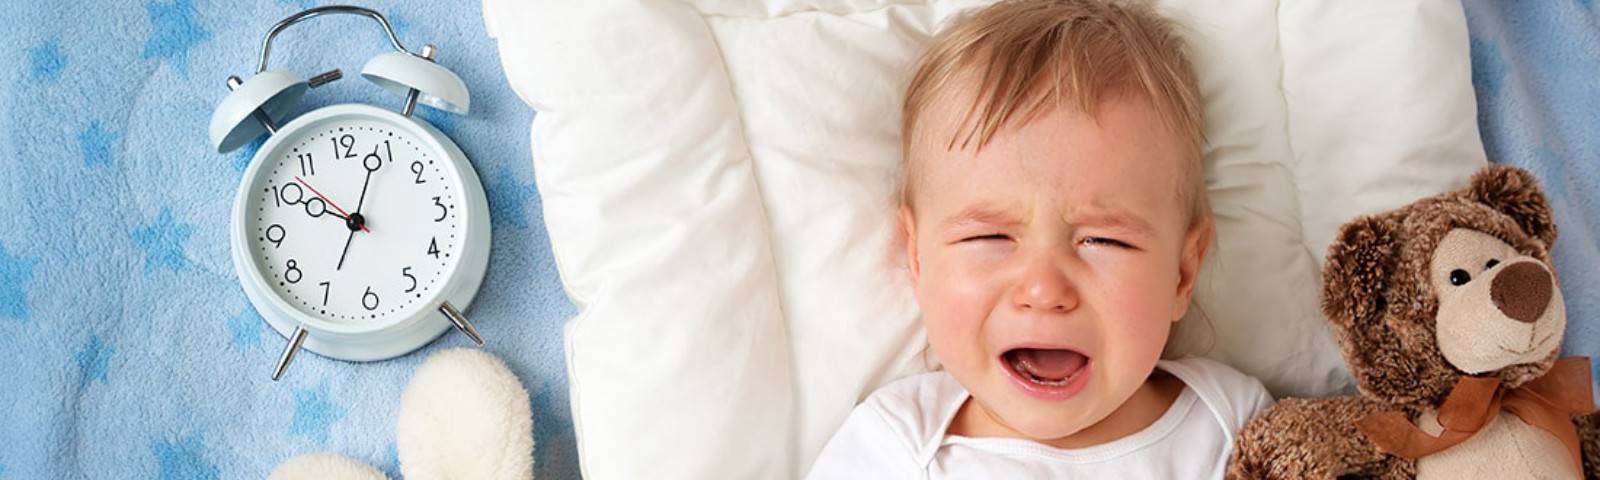 Ребенок 2 года плохо спит ночью: причины, что делать